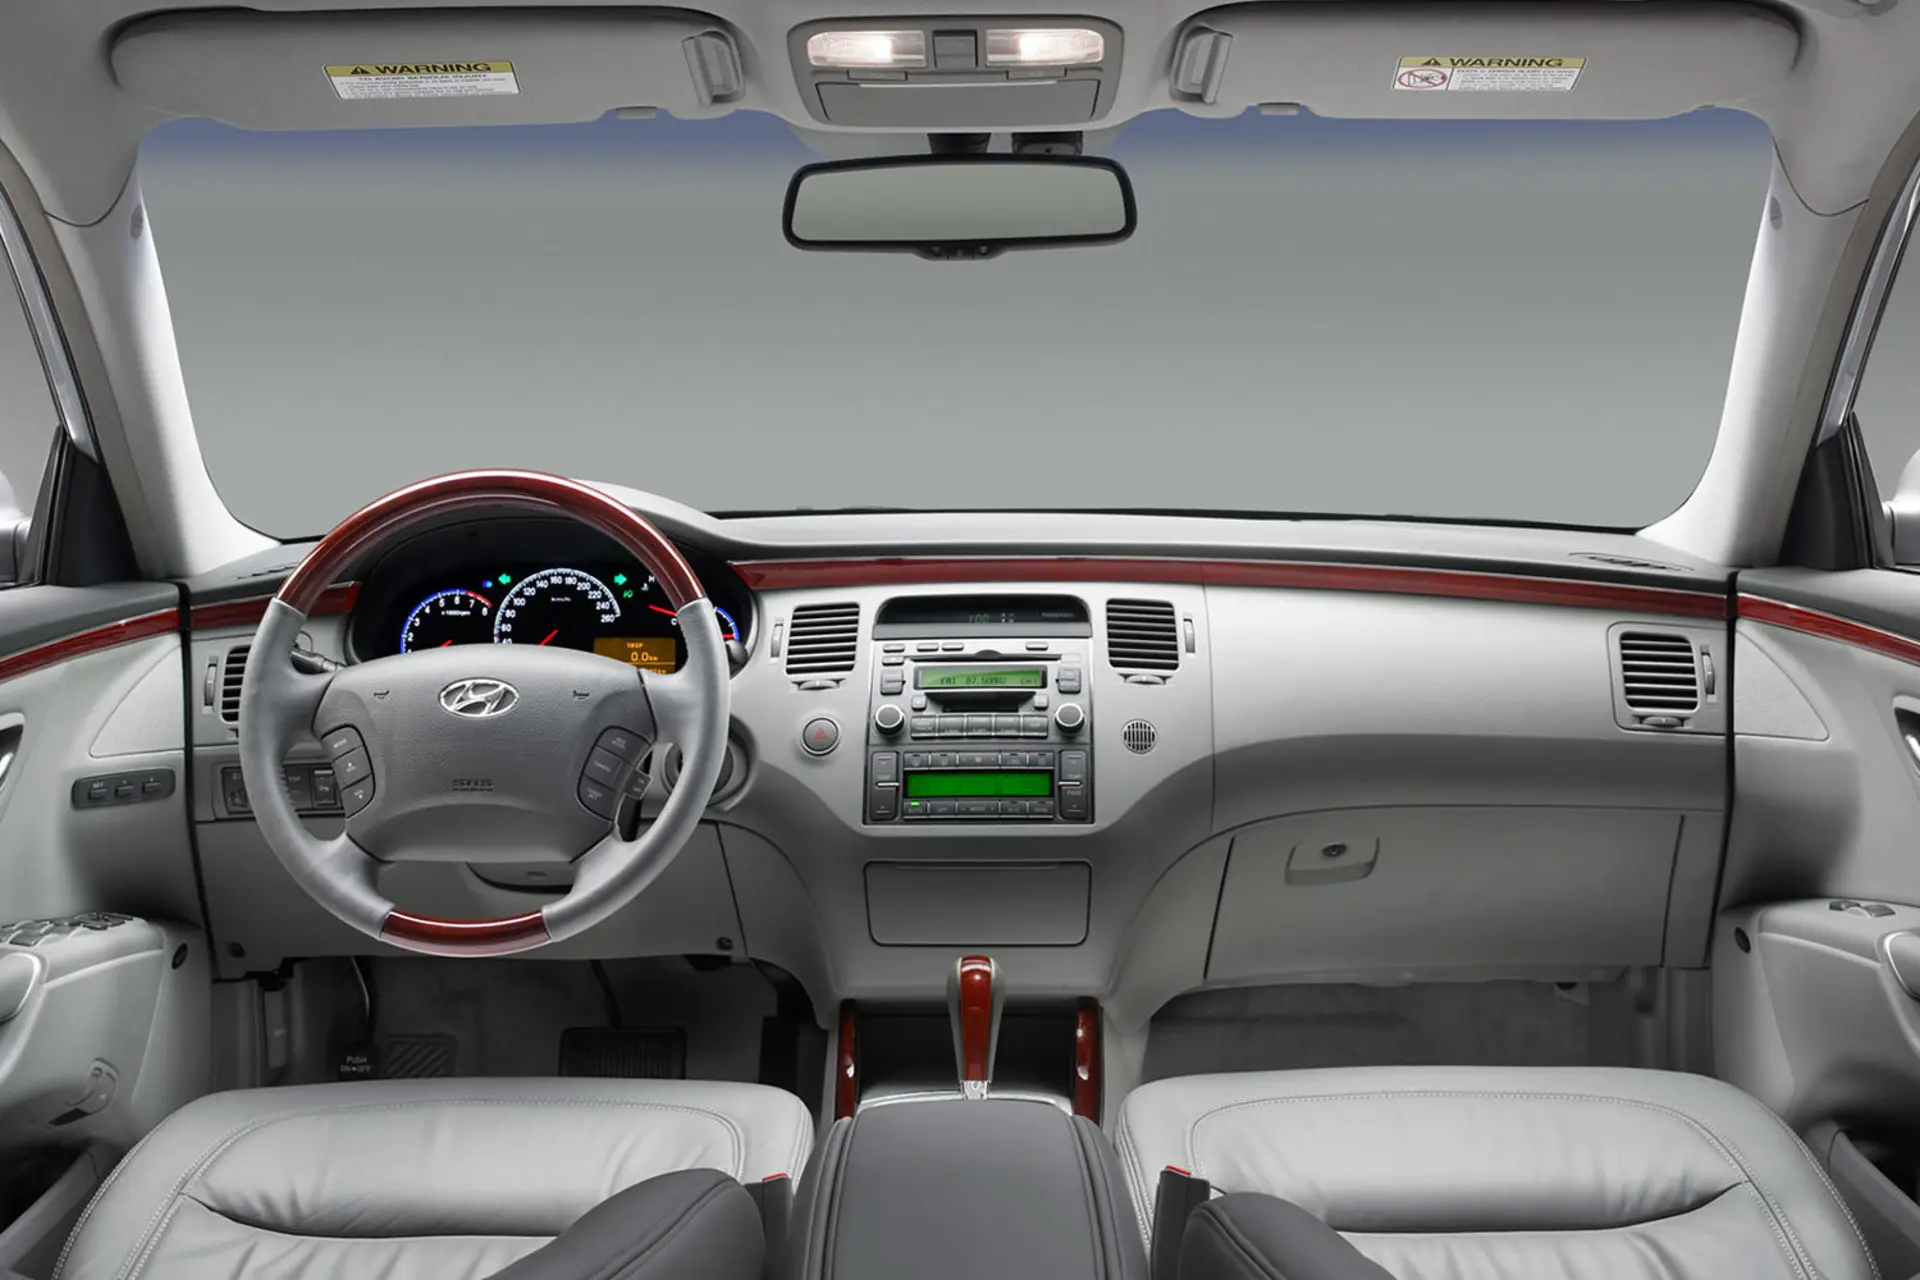 کابین خودرو هیوندای آزرا ۲۰۰۶ نمایش فرمان، دنده، آینه و صندلی و .../Hyundai Azera 2006 